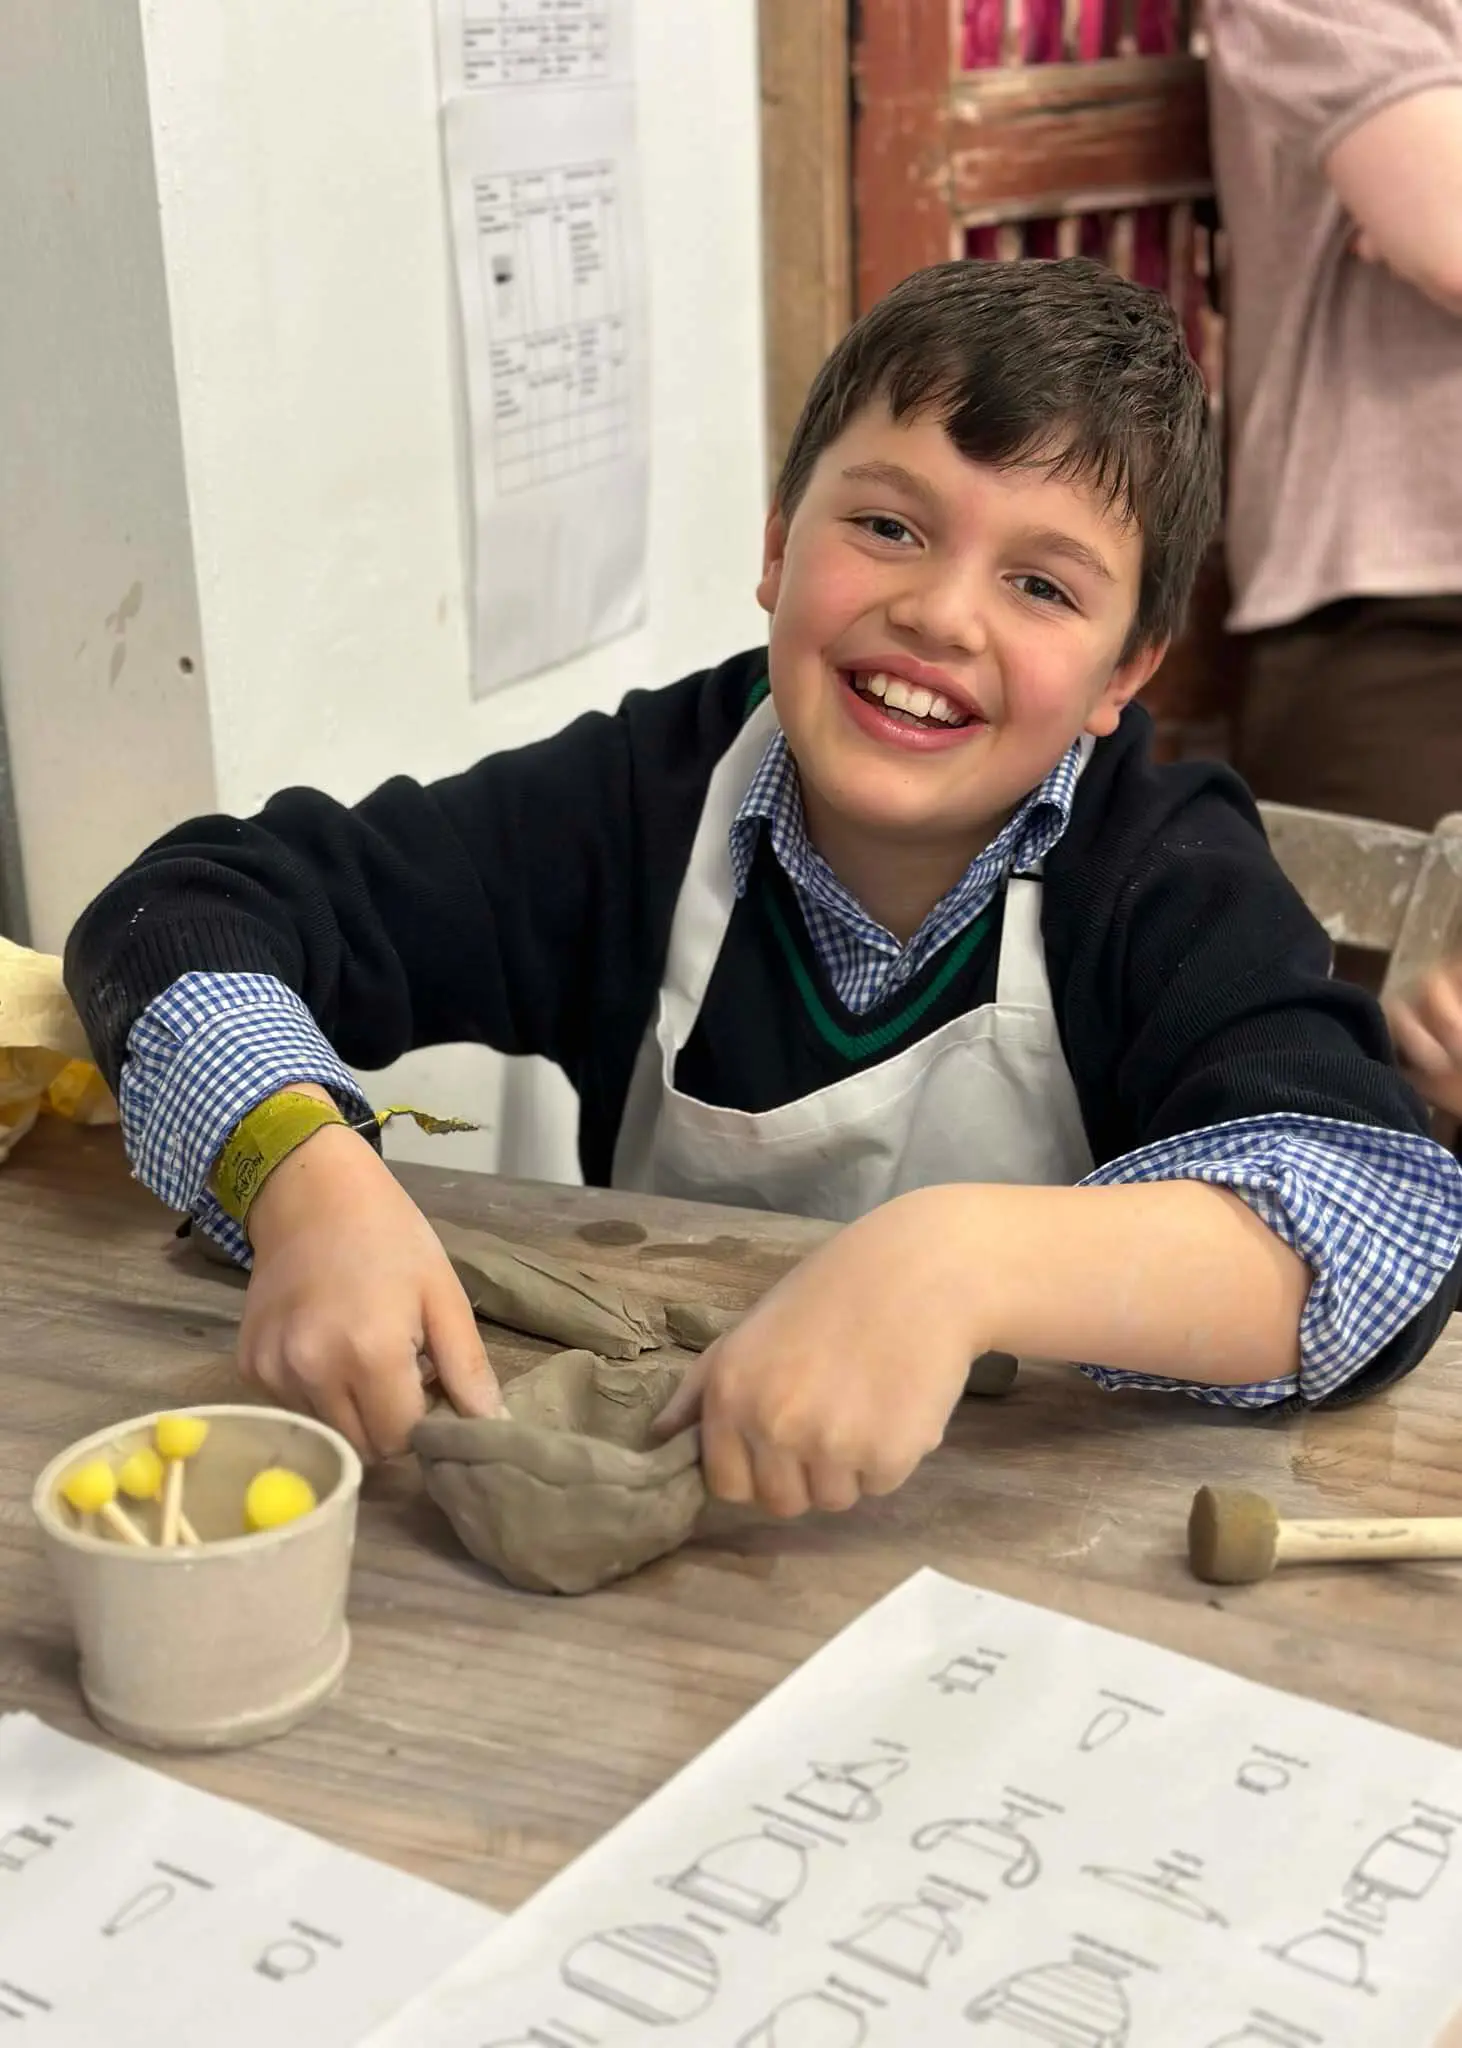 Prep 5 pupils of Ibstock Place School took a ceramics class.